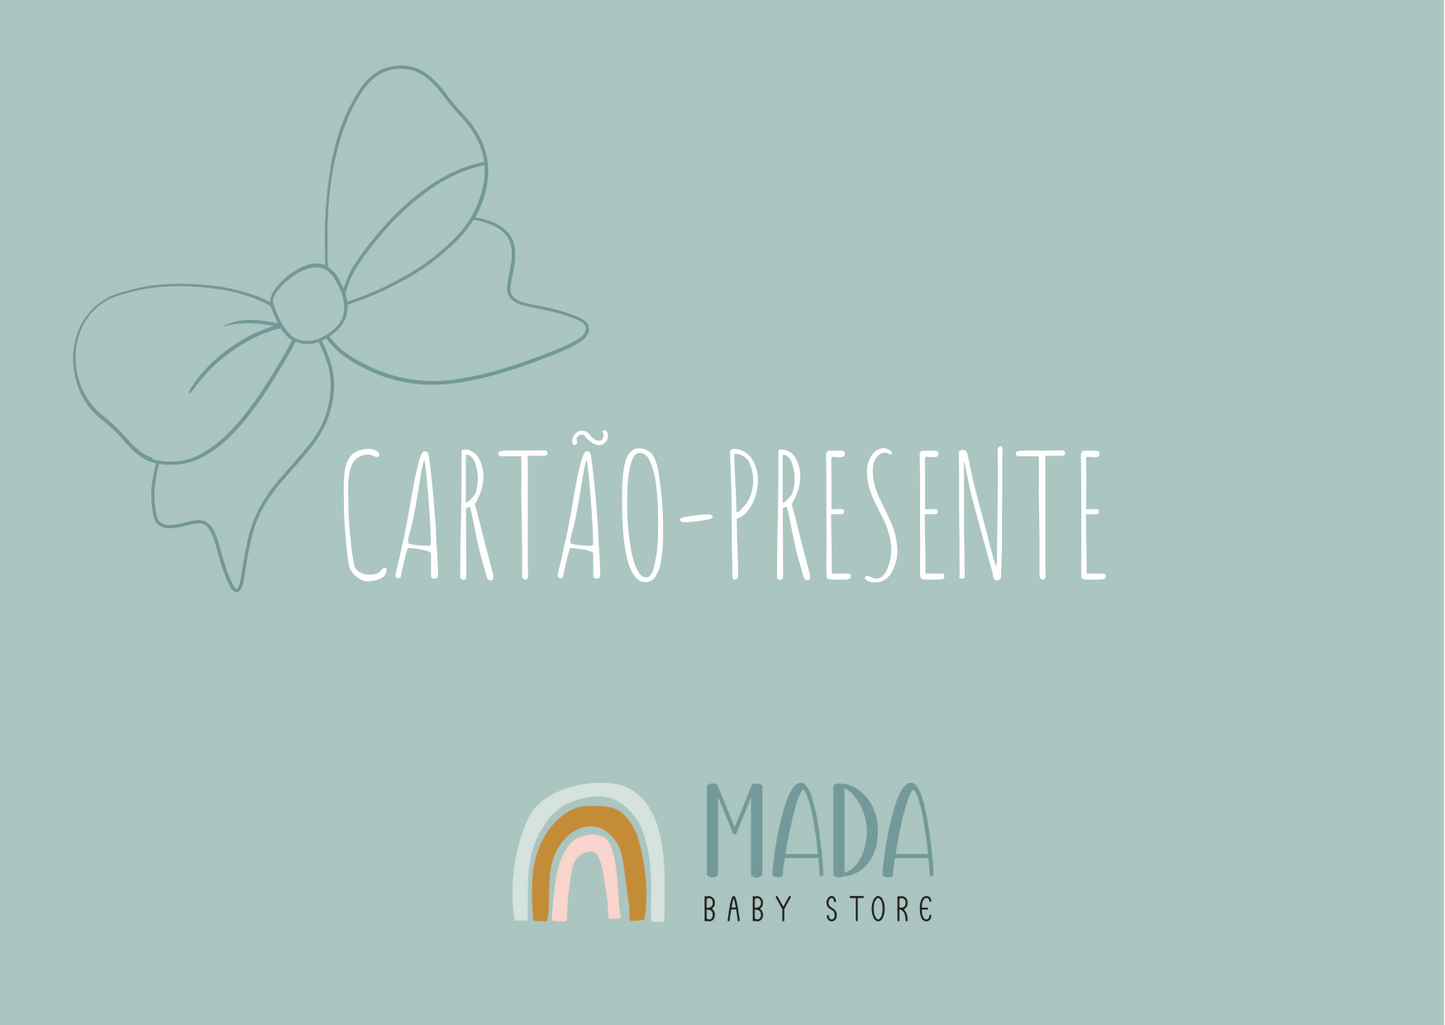 Cartão-presente Mada Baby Store